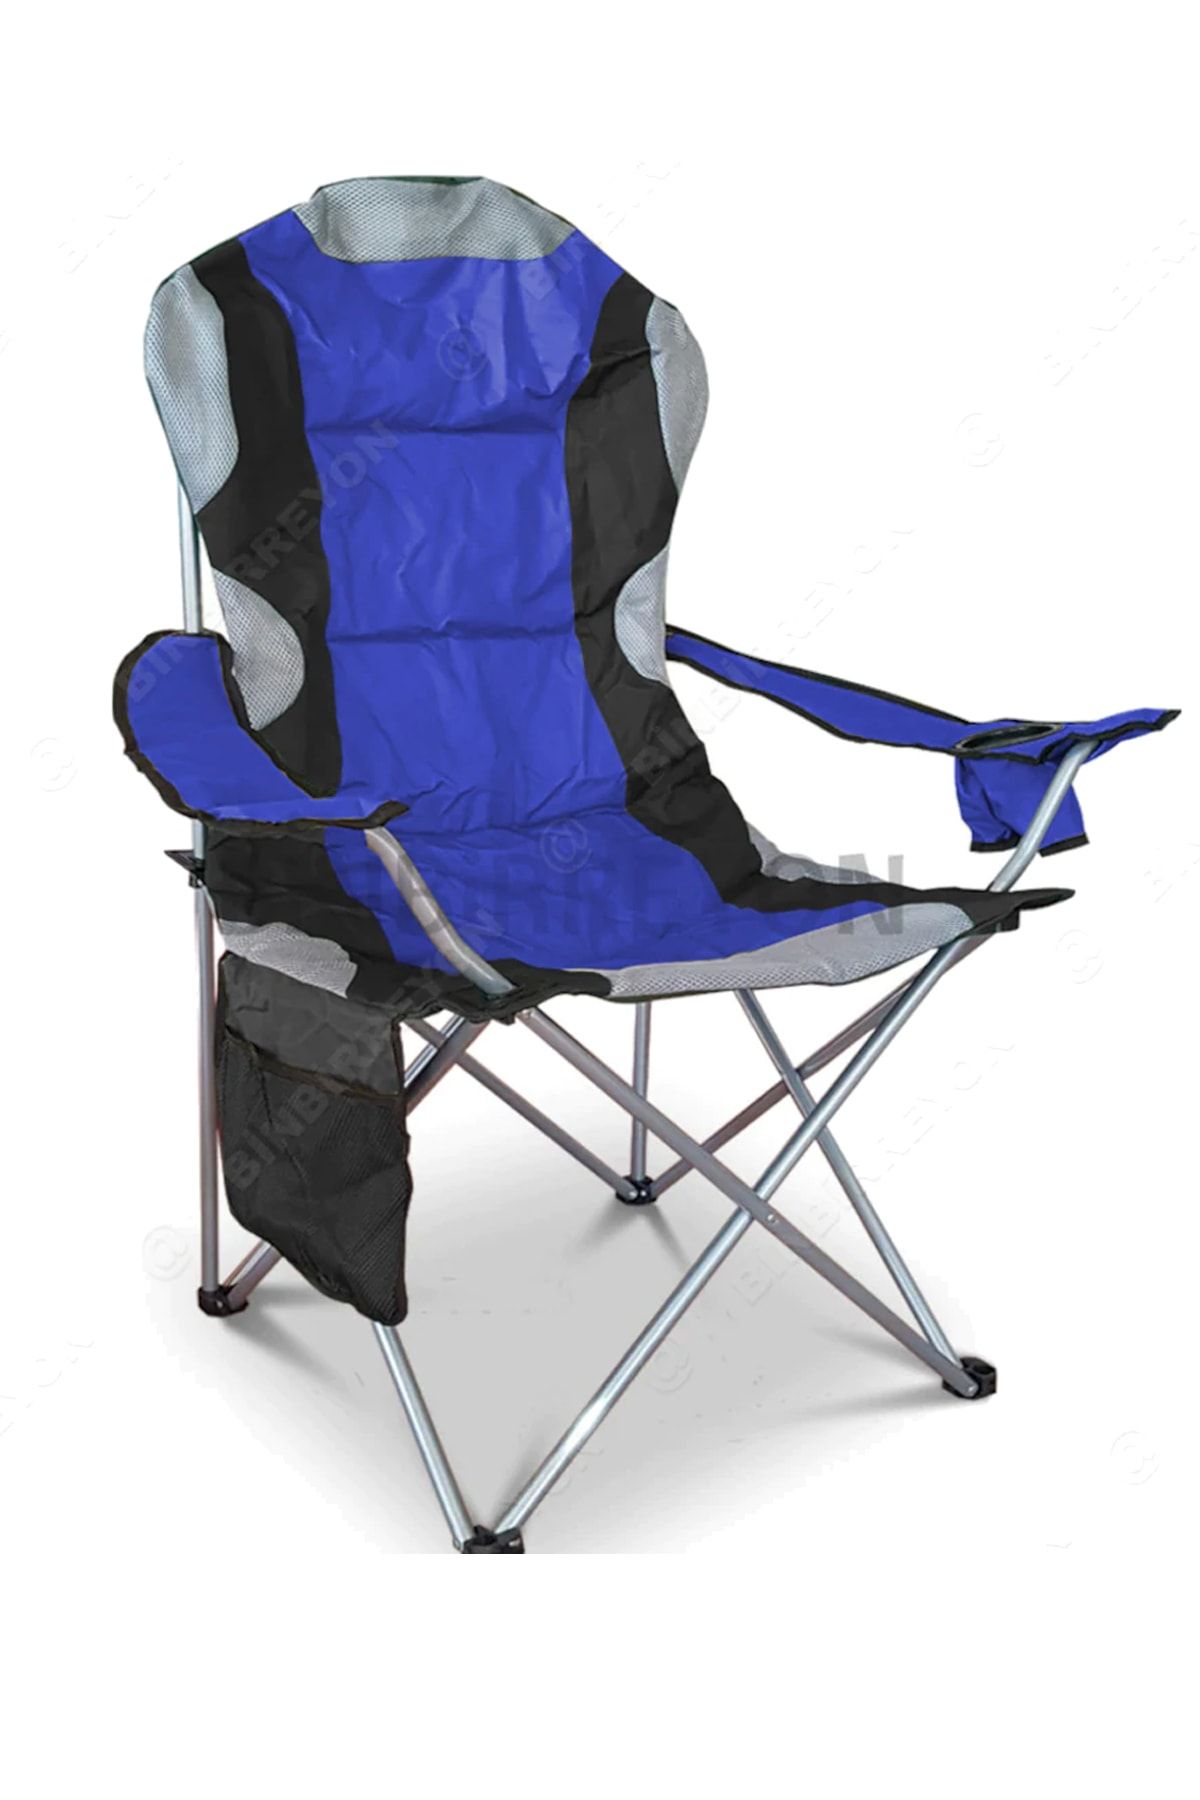 Binbirreyon Mavi Kamp Sandalyesi Kamp Koltuğu Xxl Kalın Profil 120kg Ha043-1